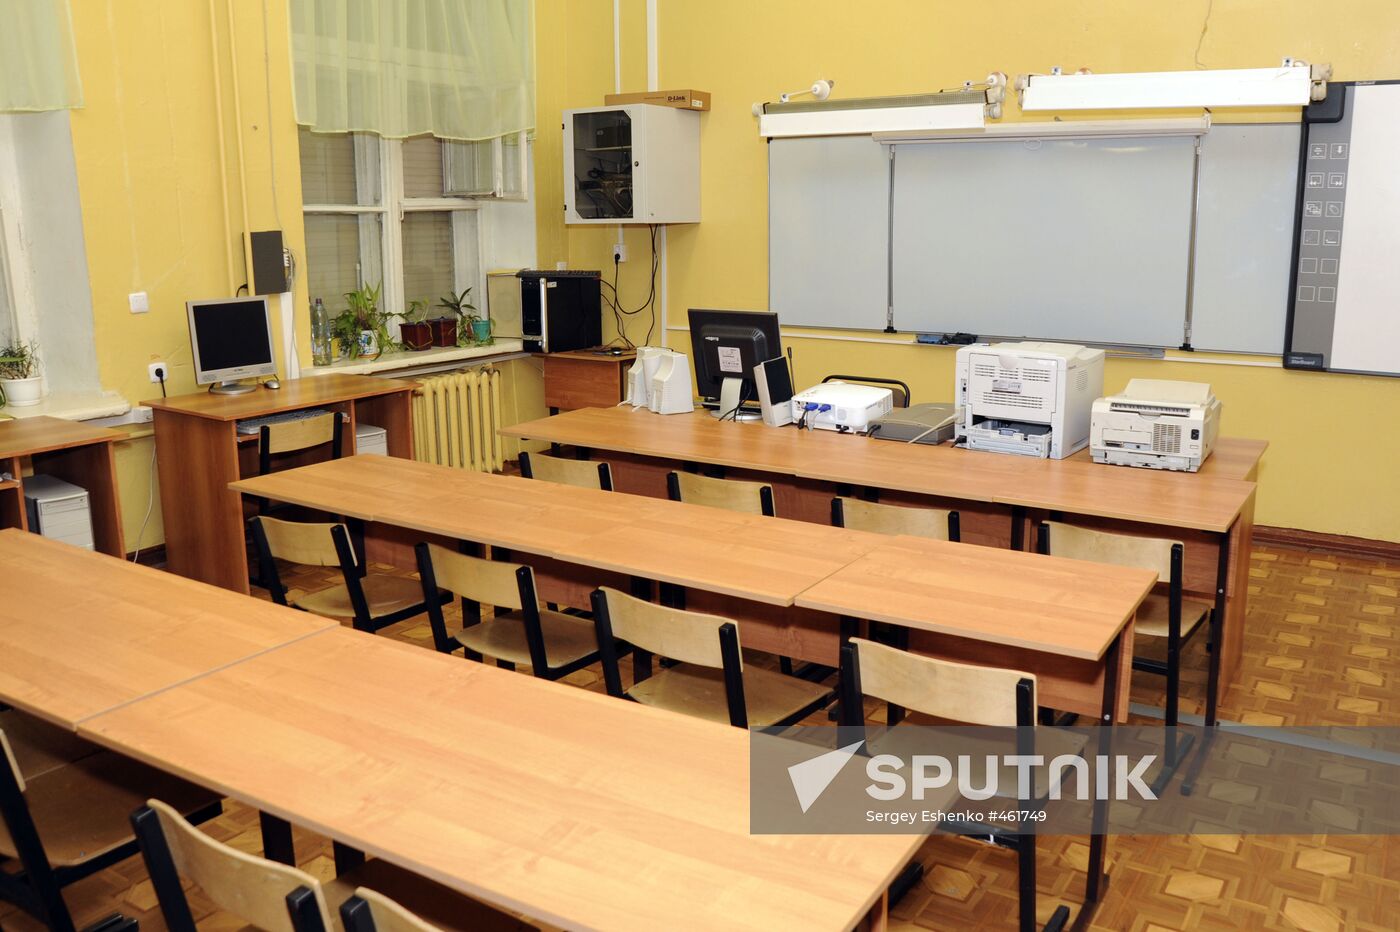 Murmansk Region school quarantined